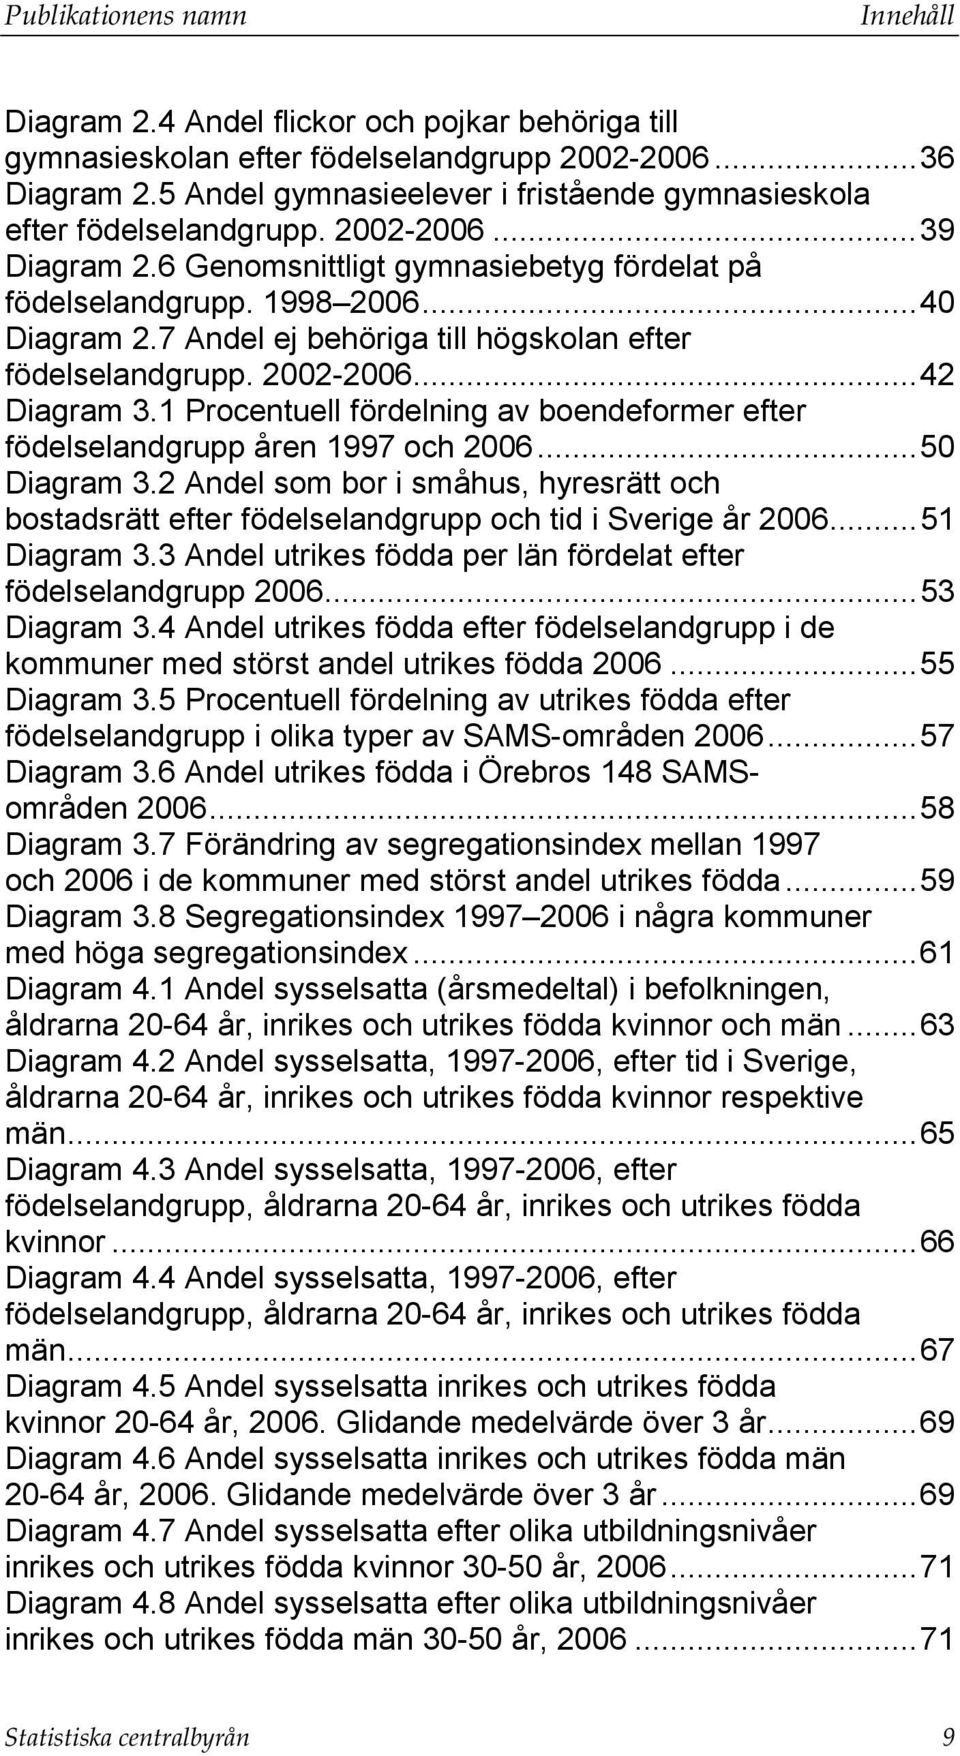 7 Andel ej behöriga till högskolan efter födelselandgrupp. 2002-2006... 42 Diagram 3.1 Procentuell fördelning av boendeformer efter födelselandgrupp åren 1997 och 2006... 50 Diagram 3.